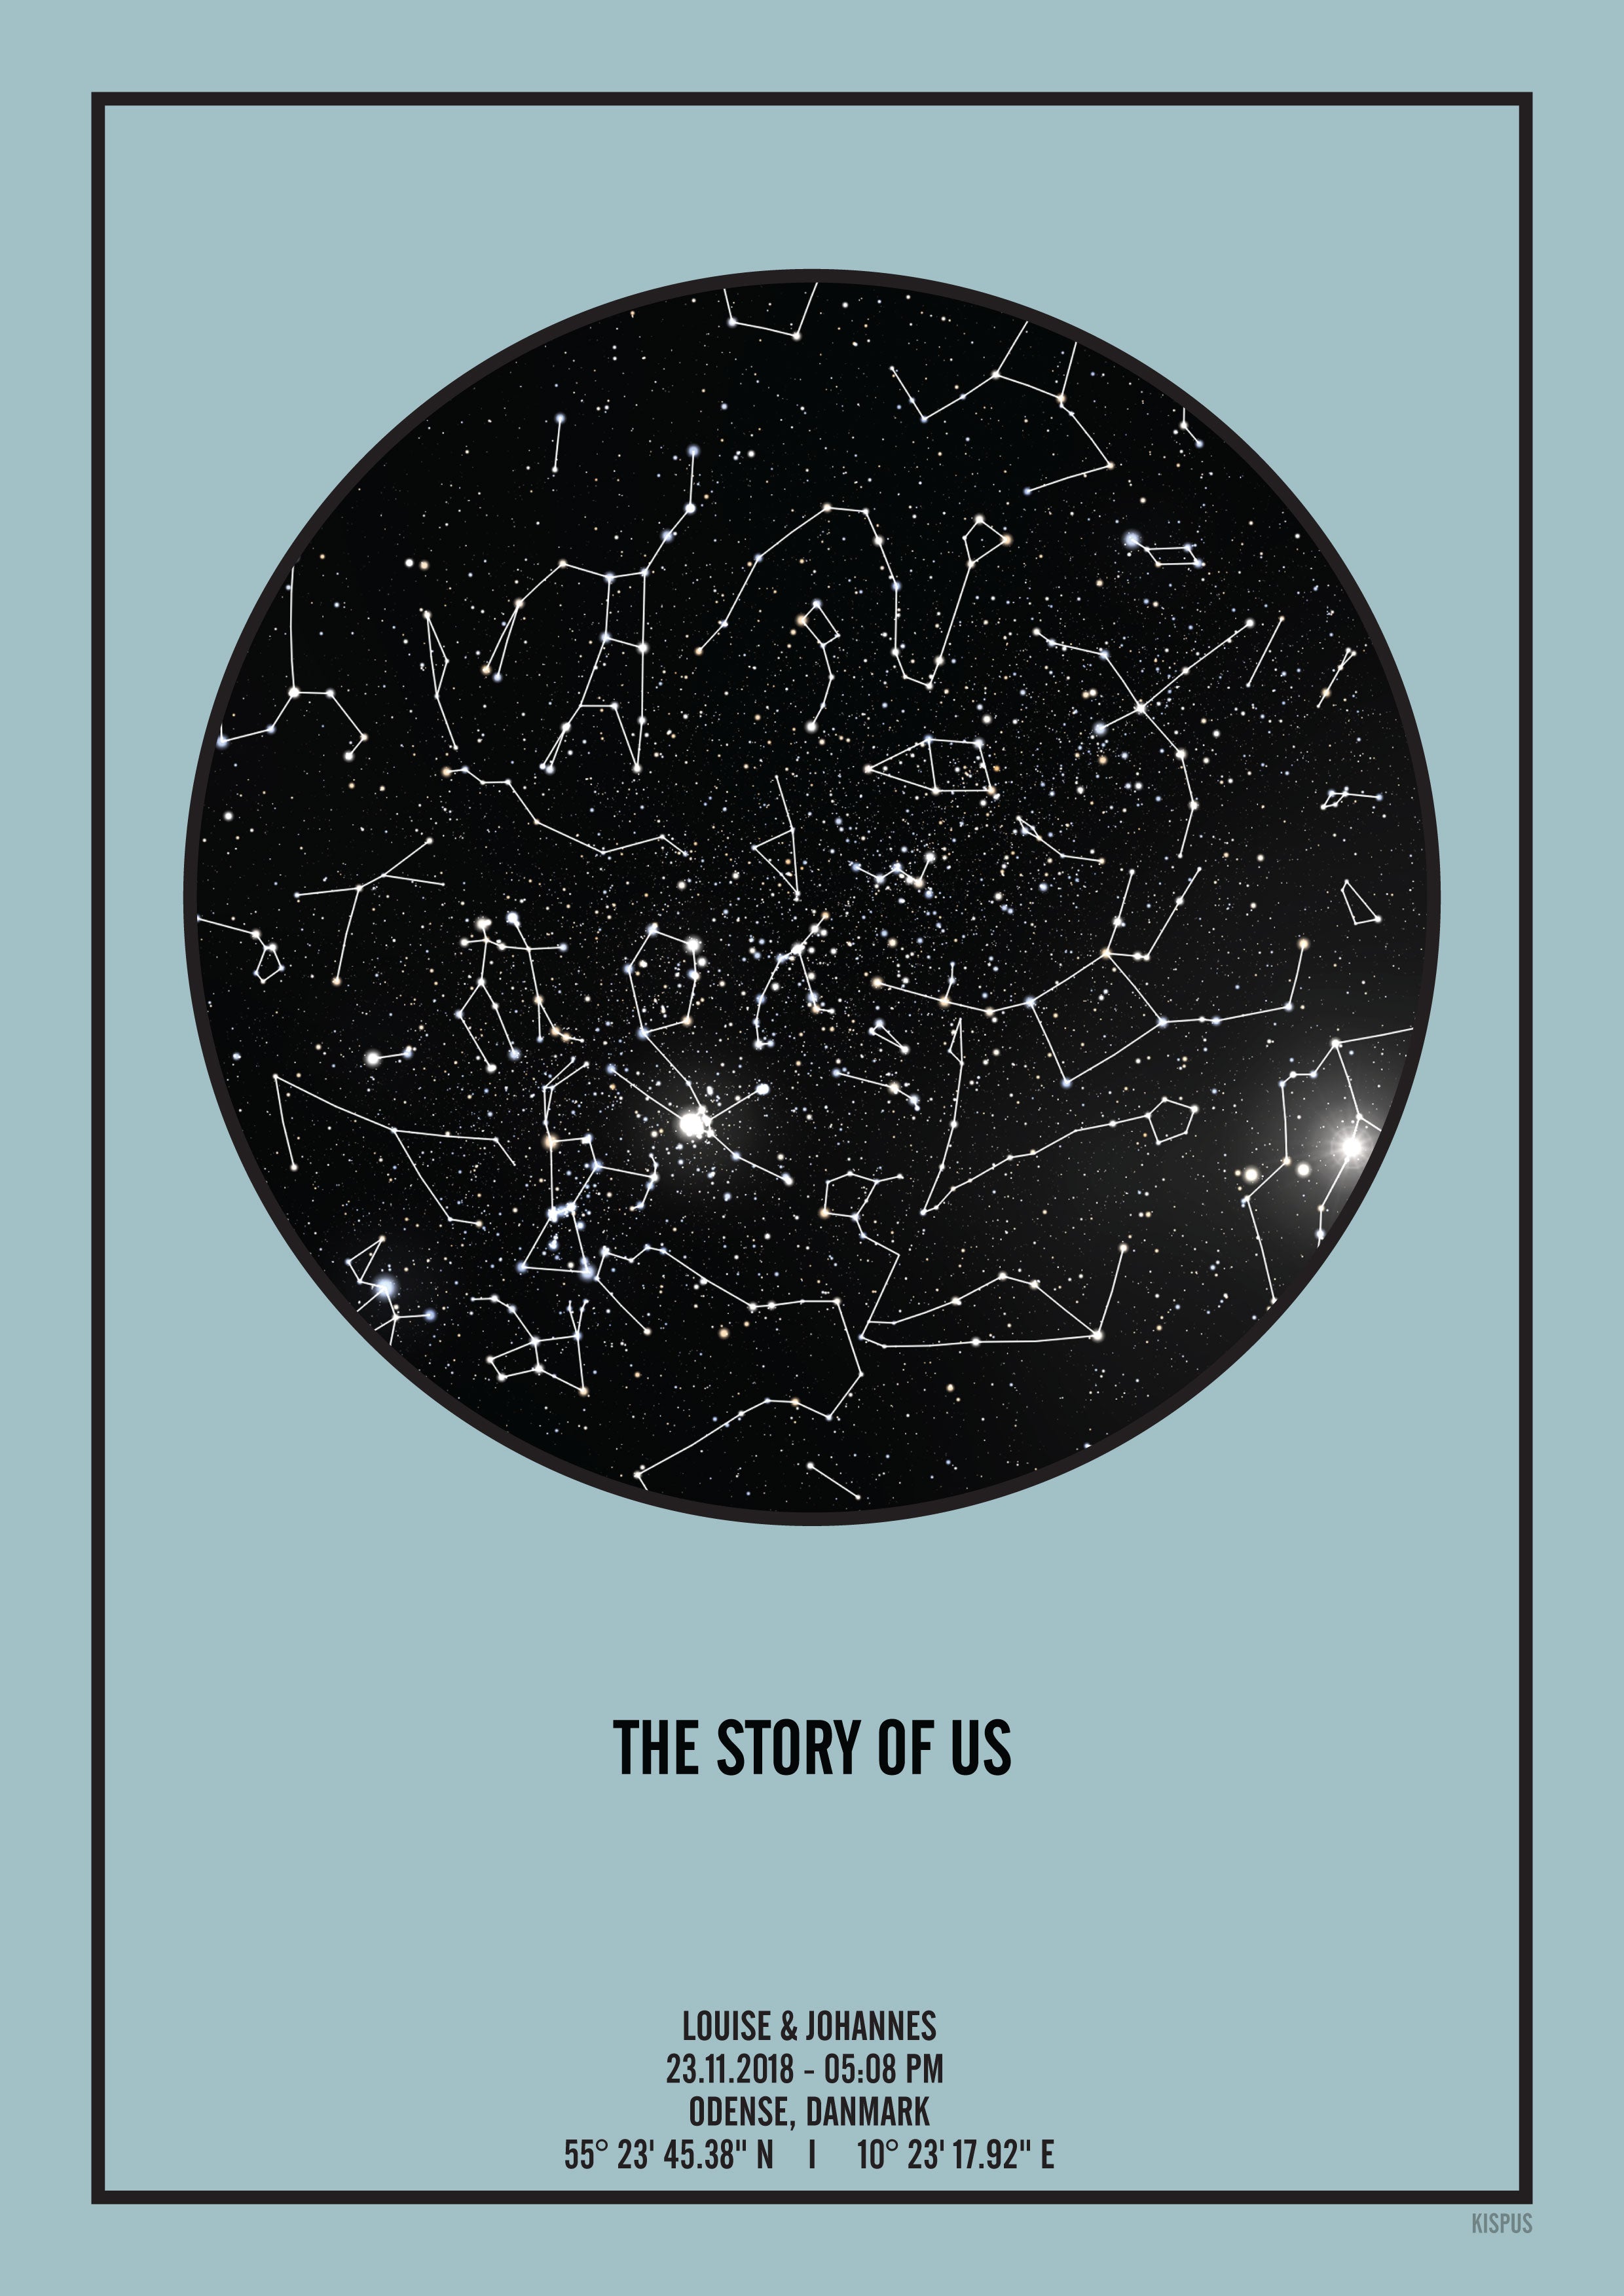 THE STORY OF US plakat med print af stjernehimmel, som den så ud, da vi mødtes